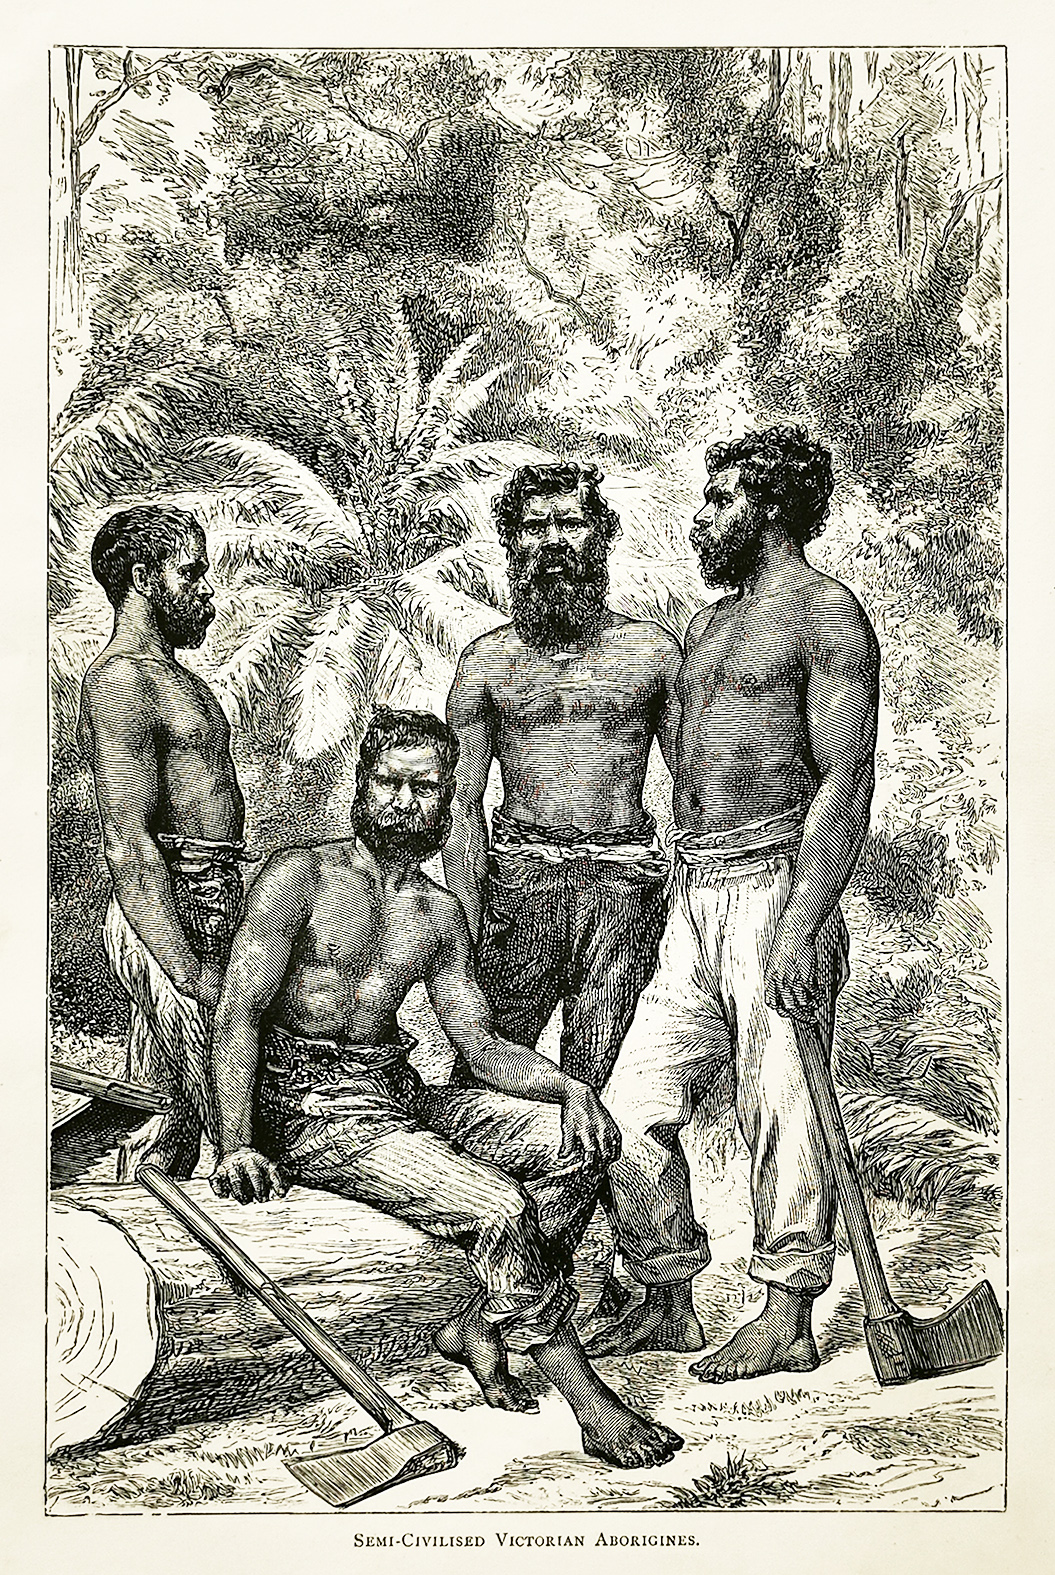 Semi-Civilised Victorian Aborigines - Antique Print from 1887